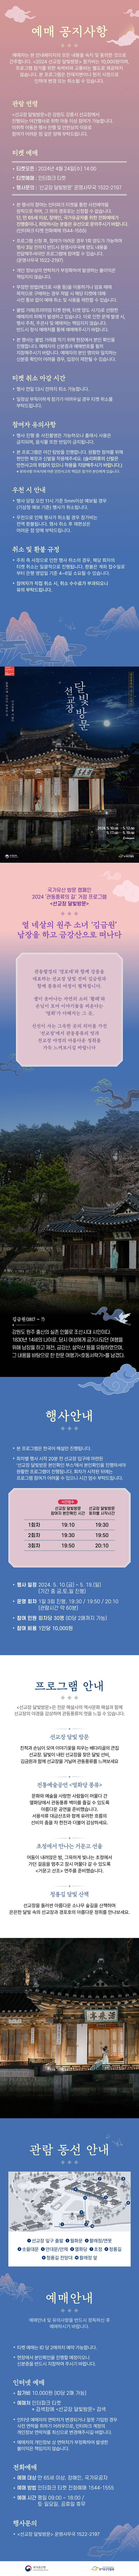 창덕궁 달빛기행의 강원도 버전인 선교장 달빛방문 | 인스티즈